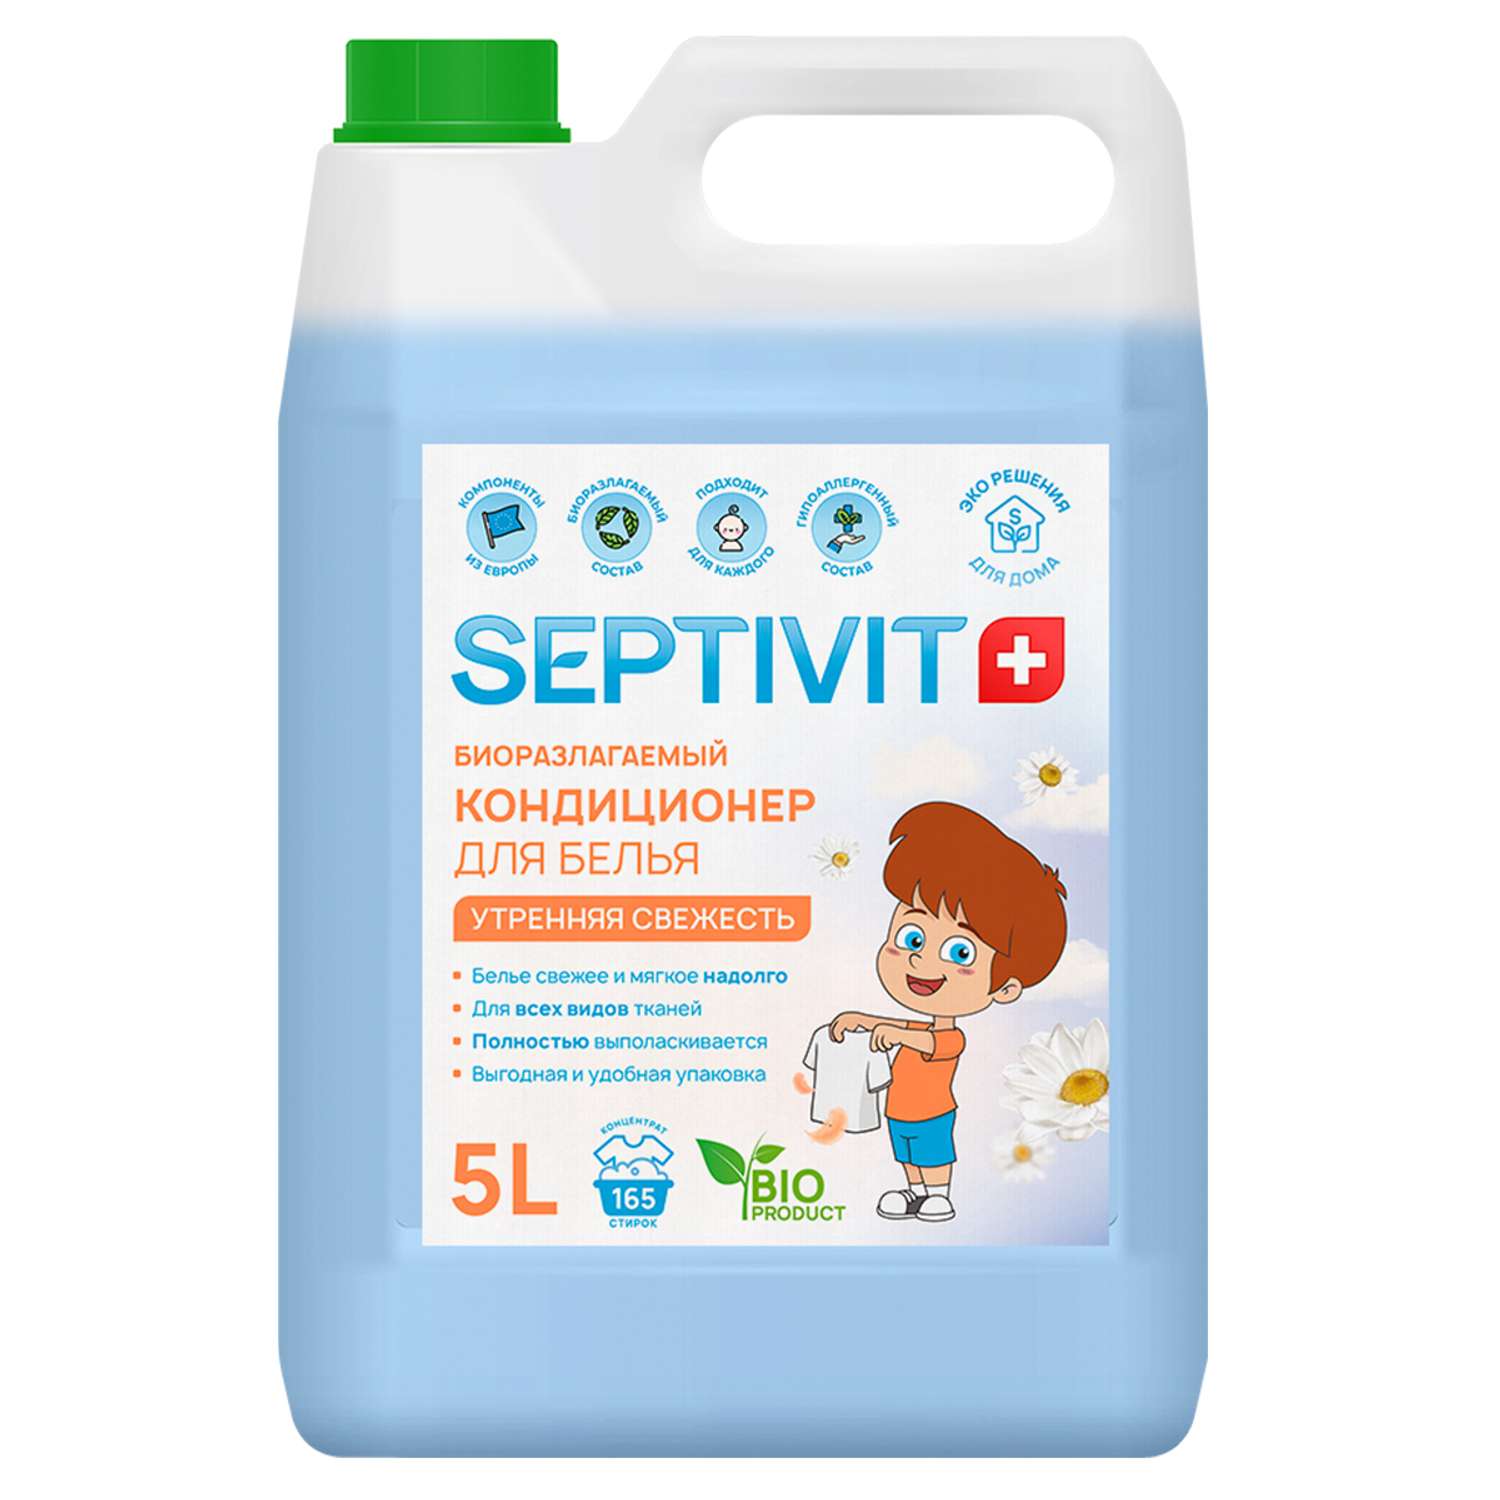 Кондиционер для белья SEPTIVIT Premium 5л с ароматом Утренняя свежесть - фото 1